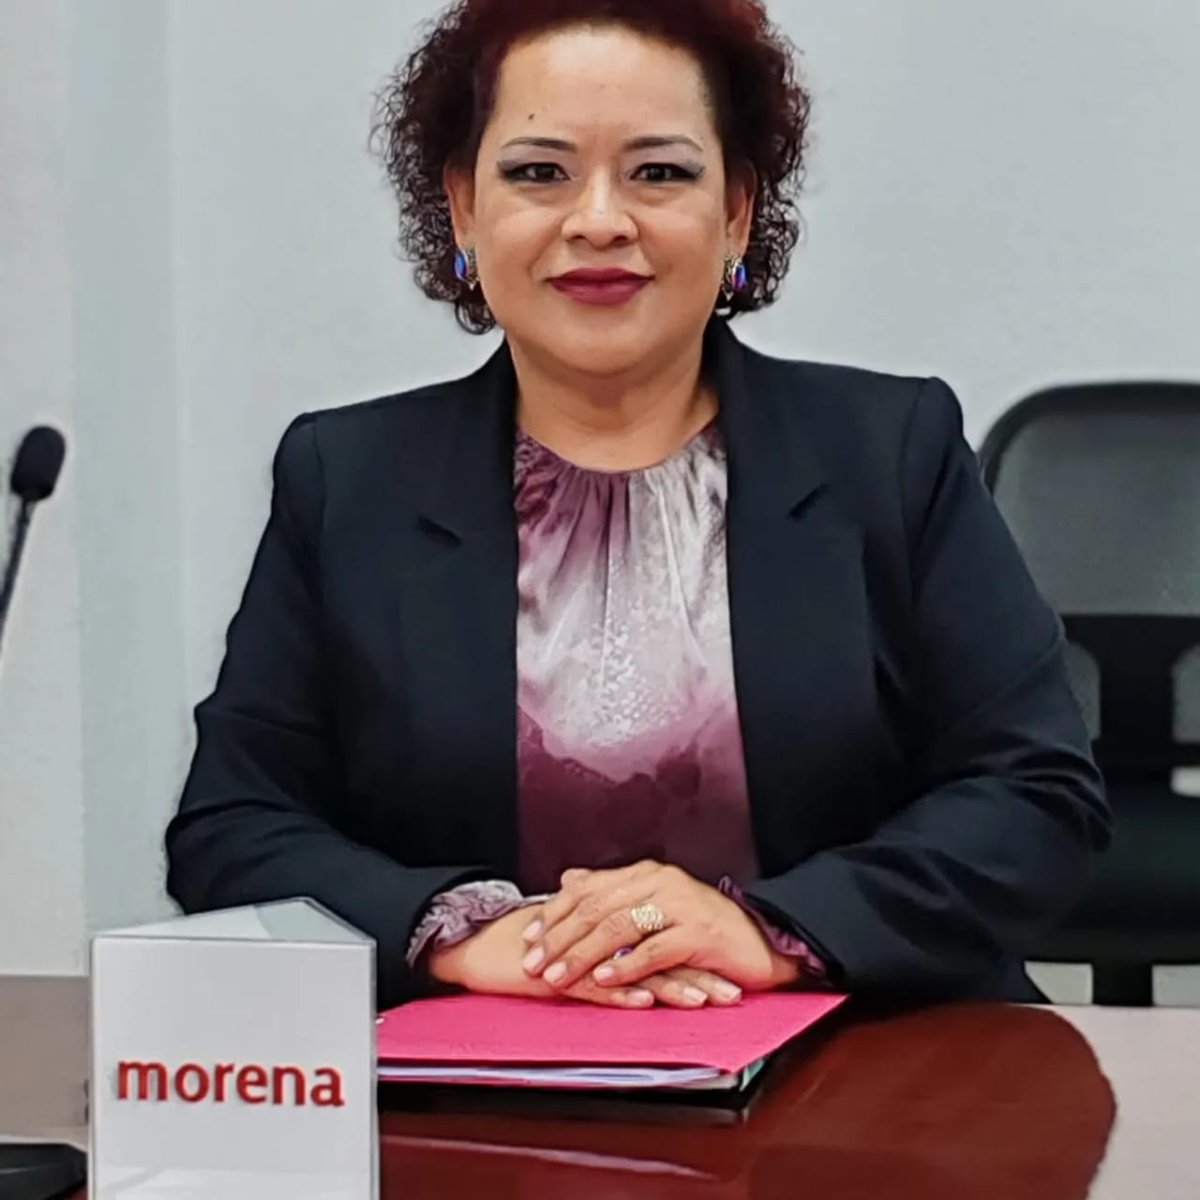 Felicito a mi compañera @RocioRojasQro por su designación como representante de @PartidoMorenaMx ante el Consejo Local del INE en #Querétaro.